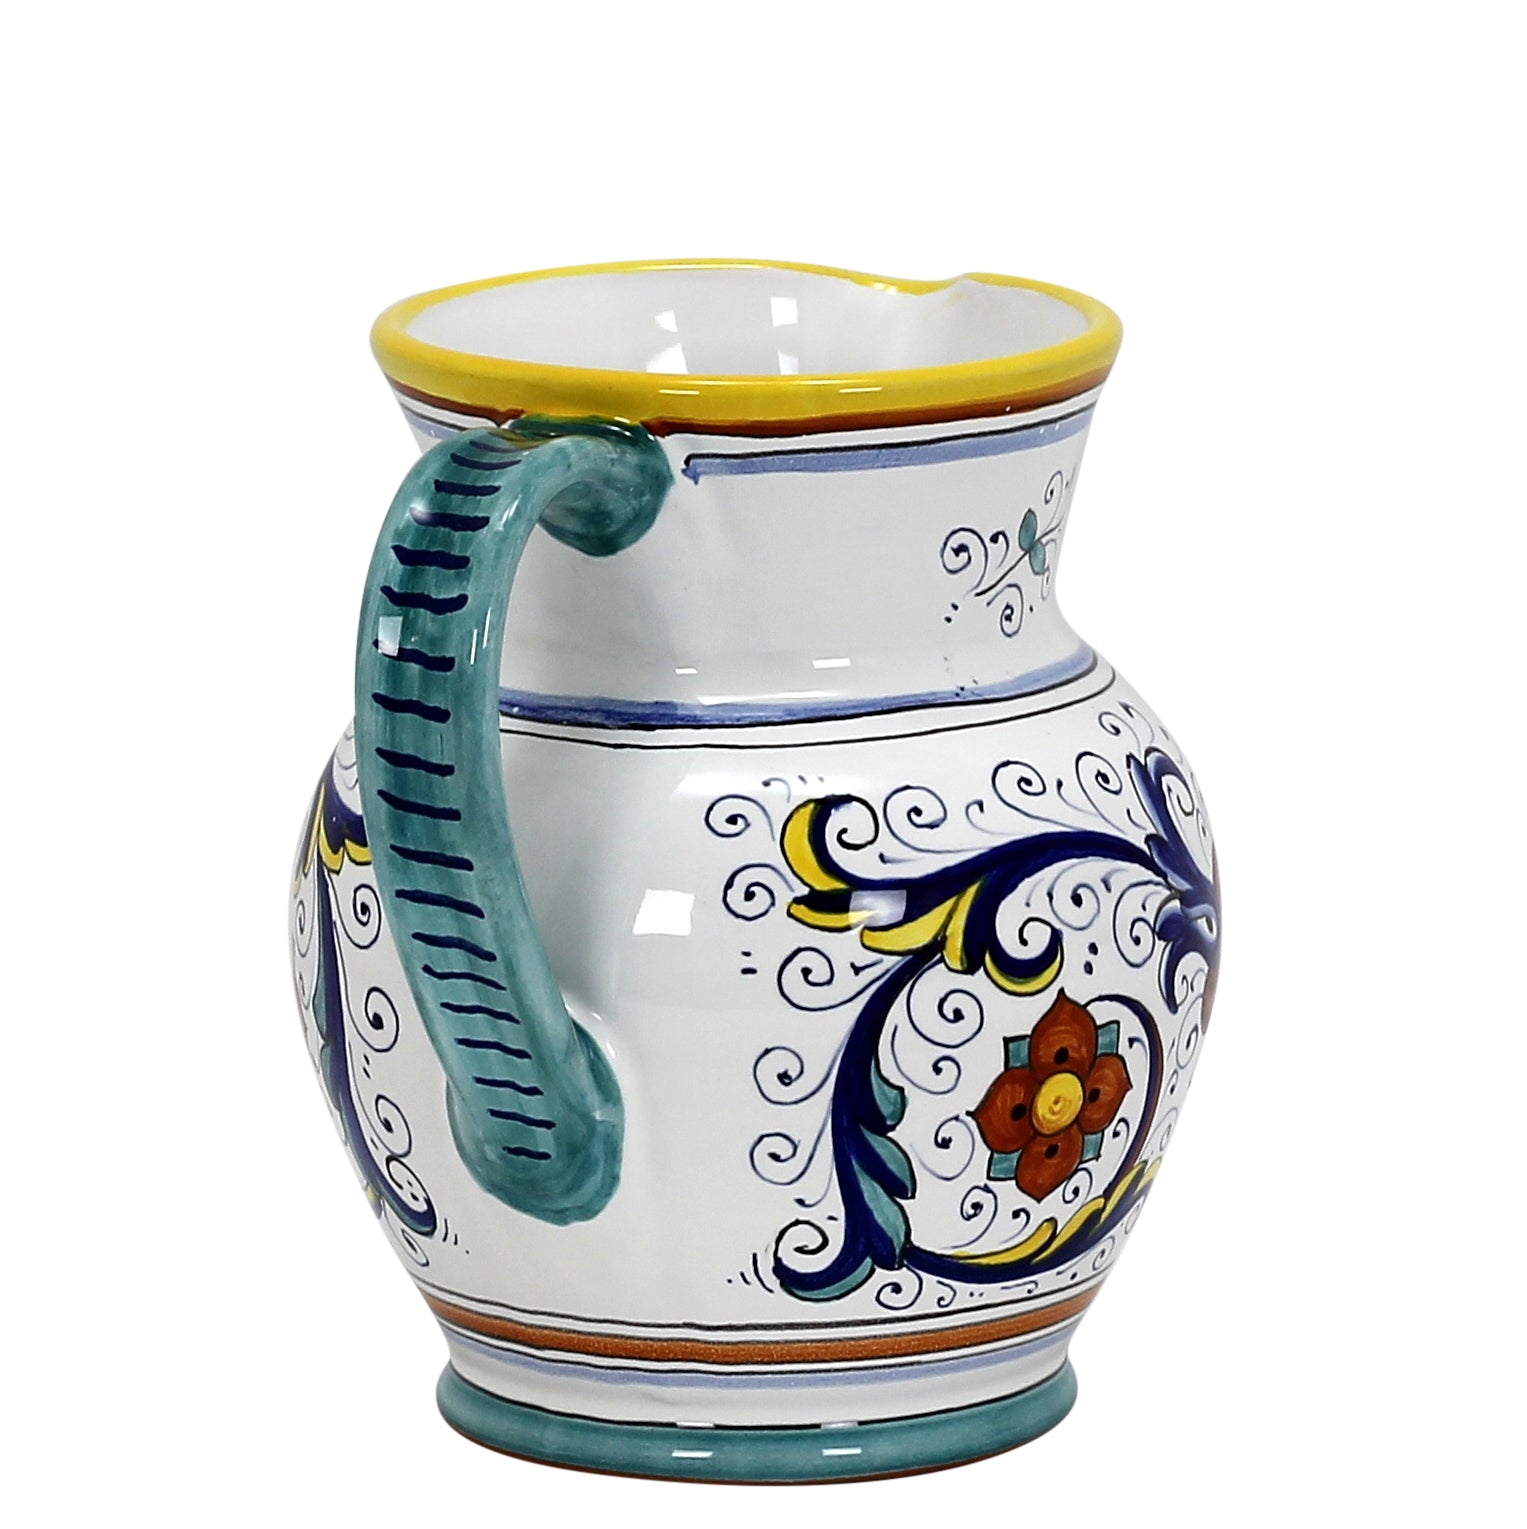 RICCO DERUTA: Traditional Deruta Pitcher (1.25 Liters/40 Oz/5 Cups) - Artistica.com